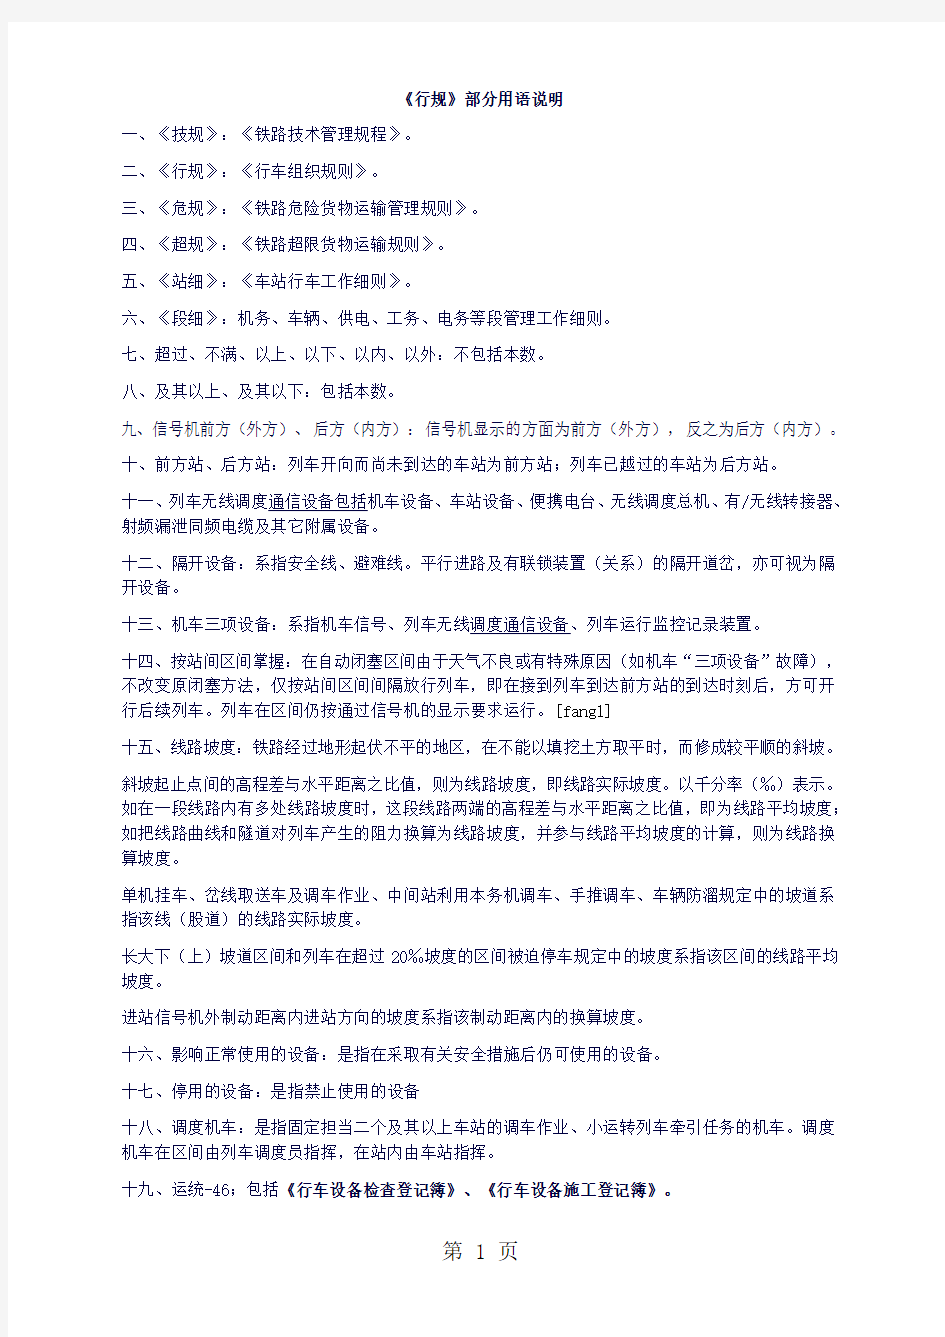 武汉铁路局《行车组织规则》2019版共93页文档